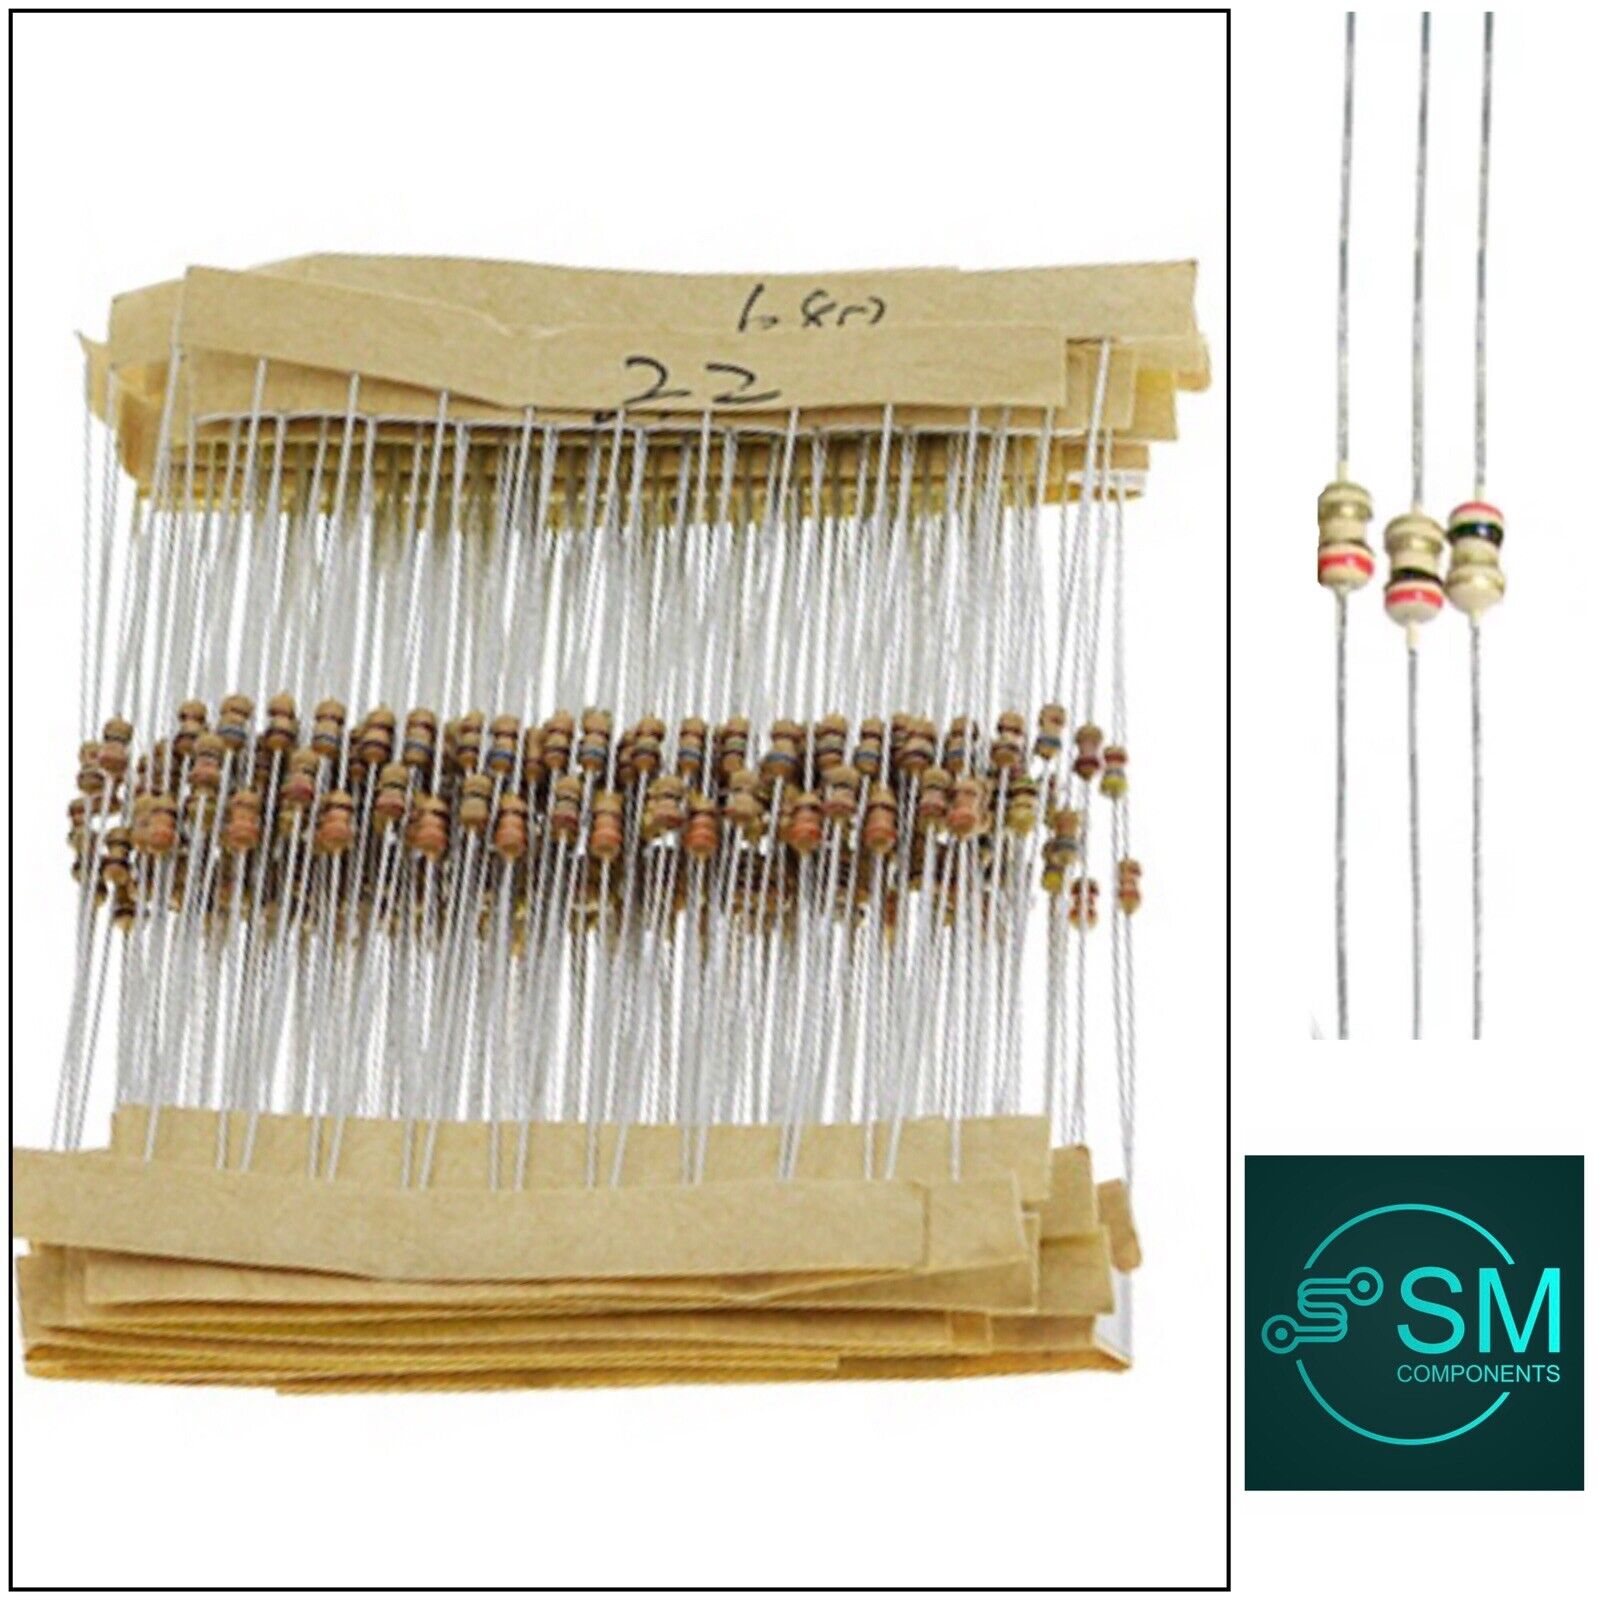 Buy 600 pcs. Metal Film Resistor Assorted kit - 30 Kinds Online at